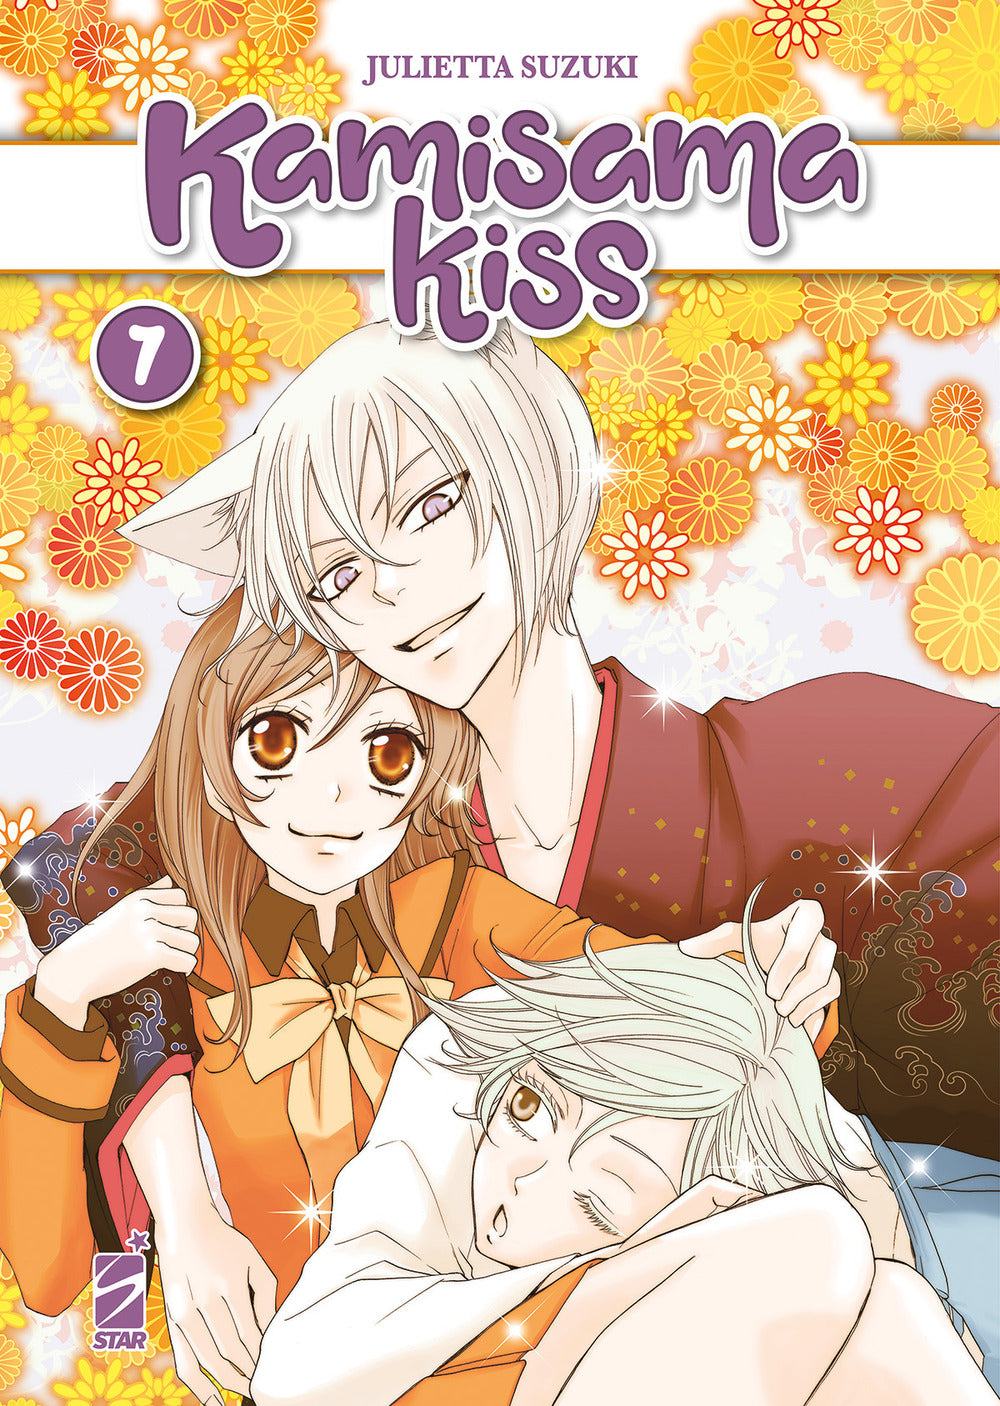 Kamisama kiss. New edition. Vol. 7